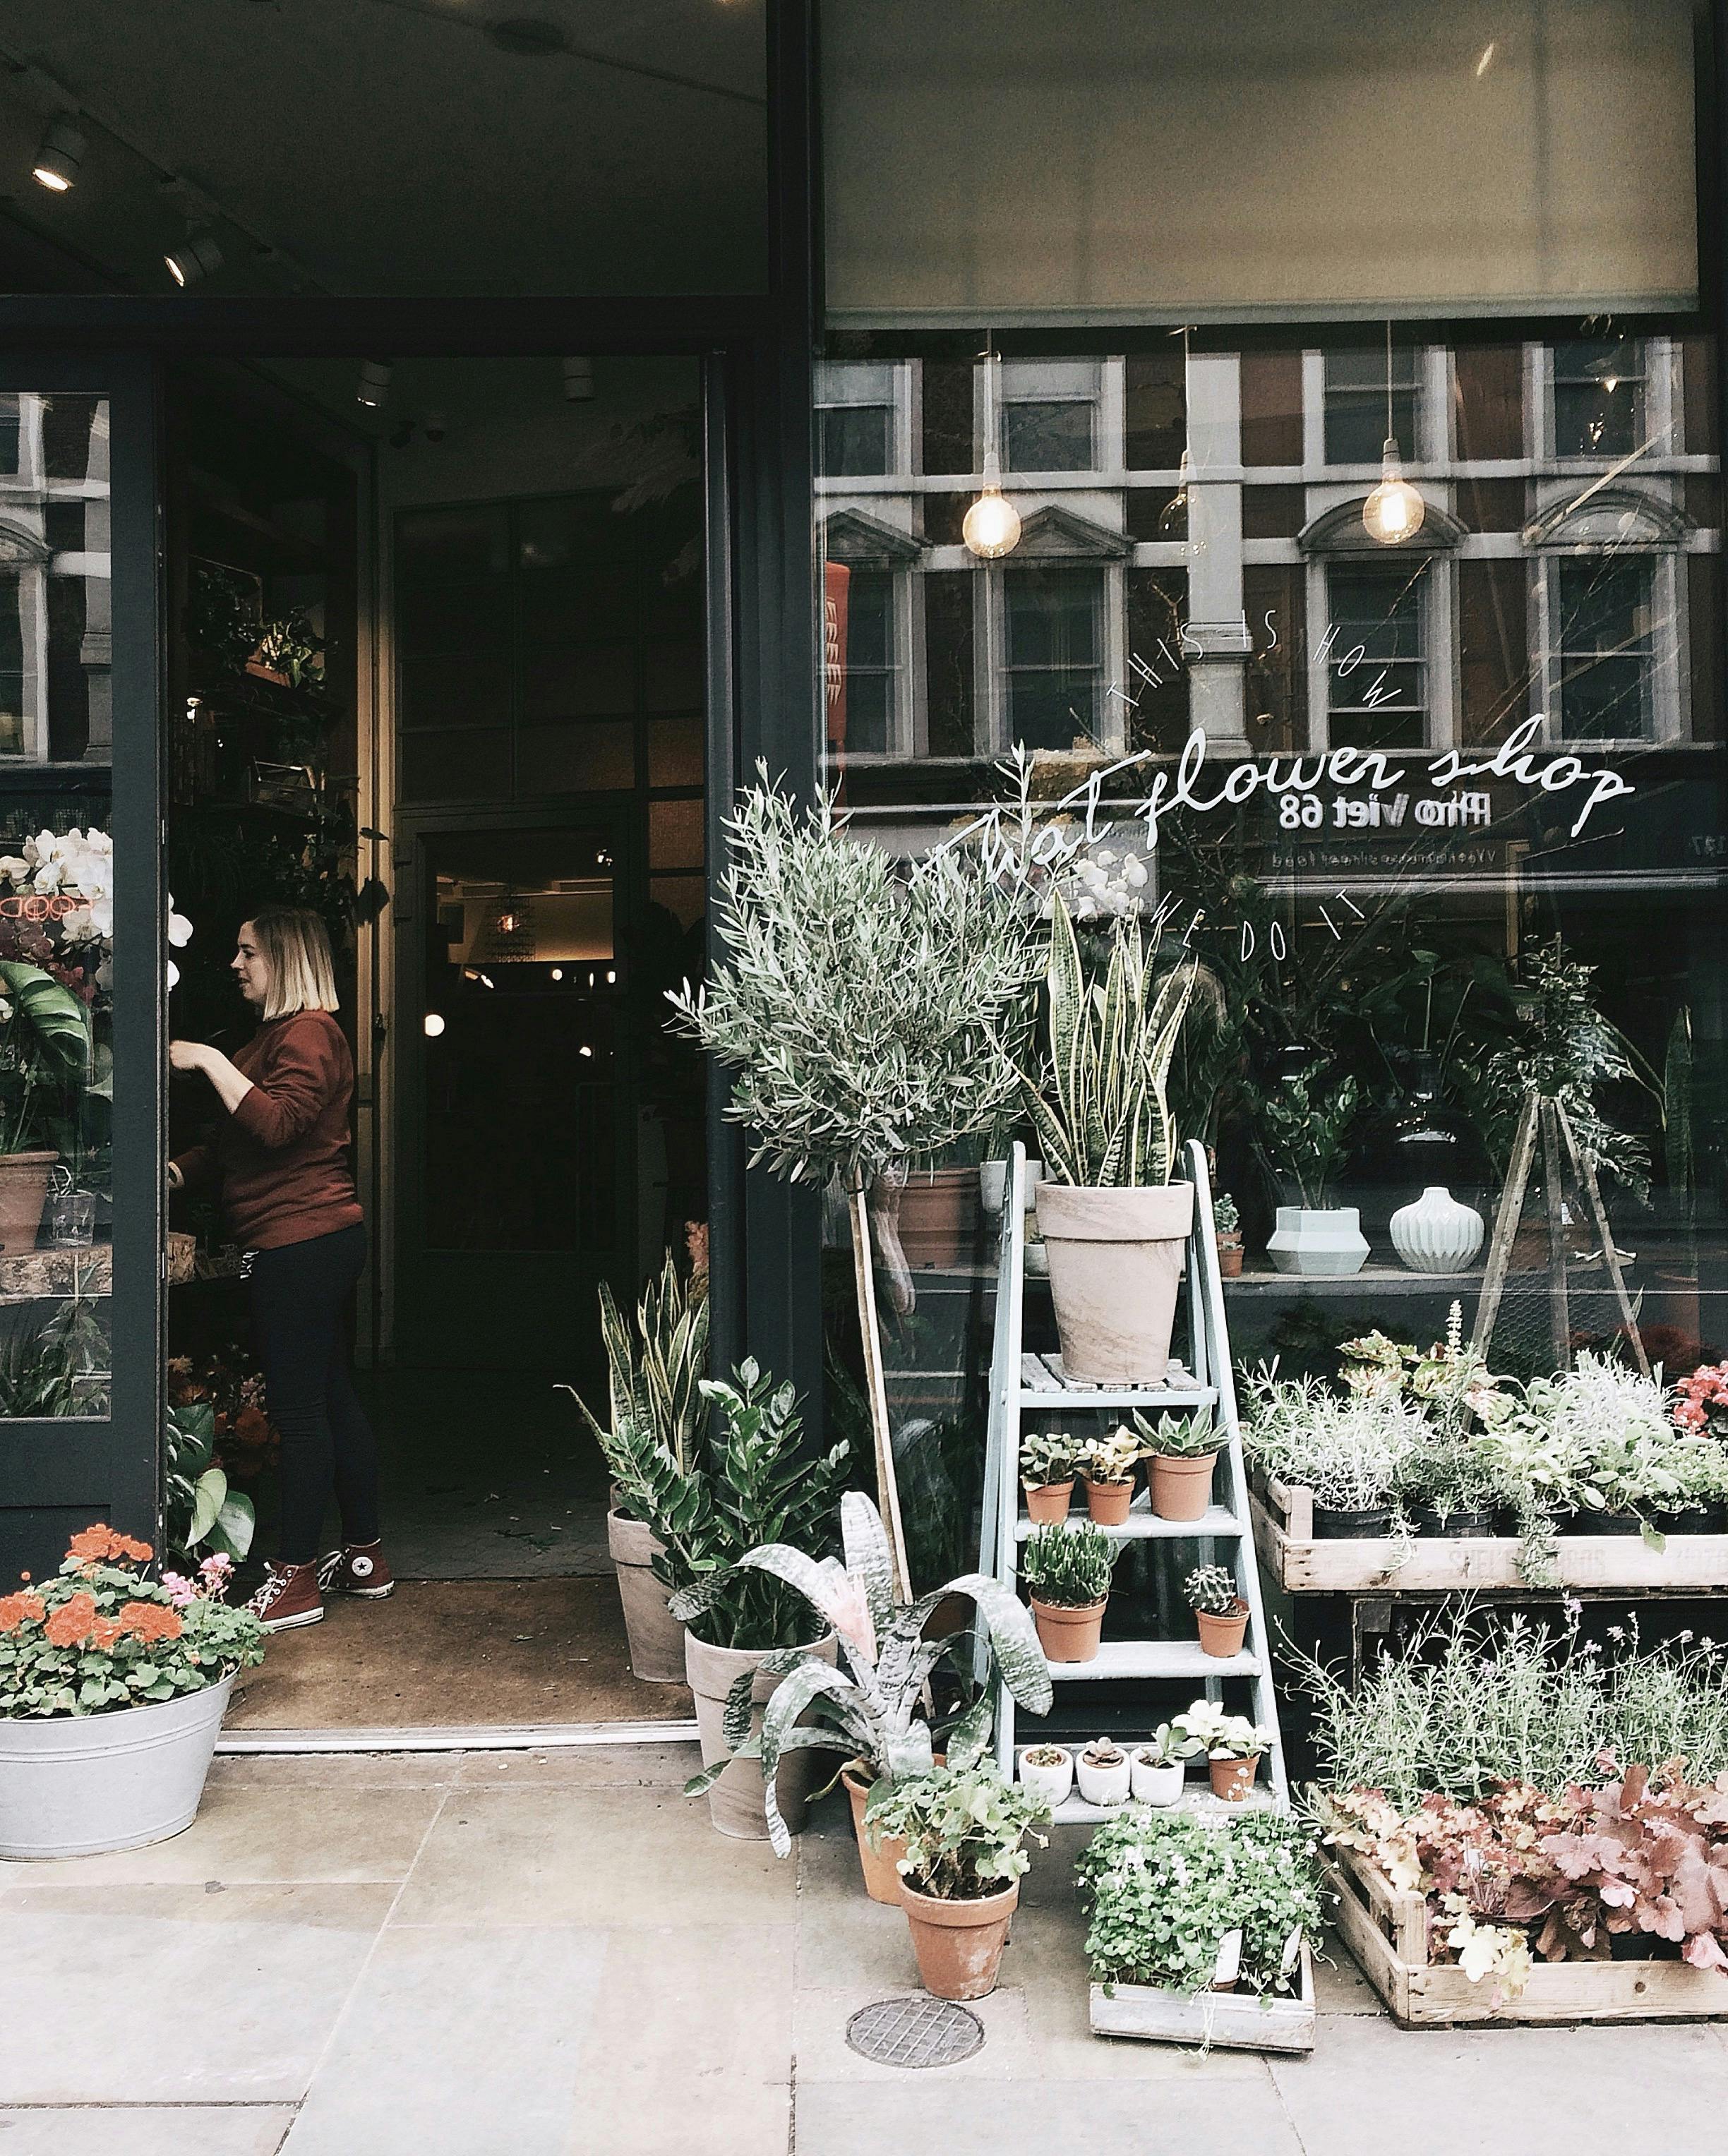 A flower shop | Photo: Pexels